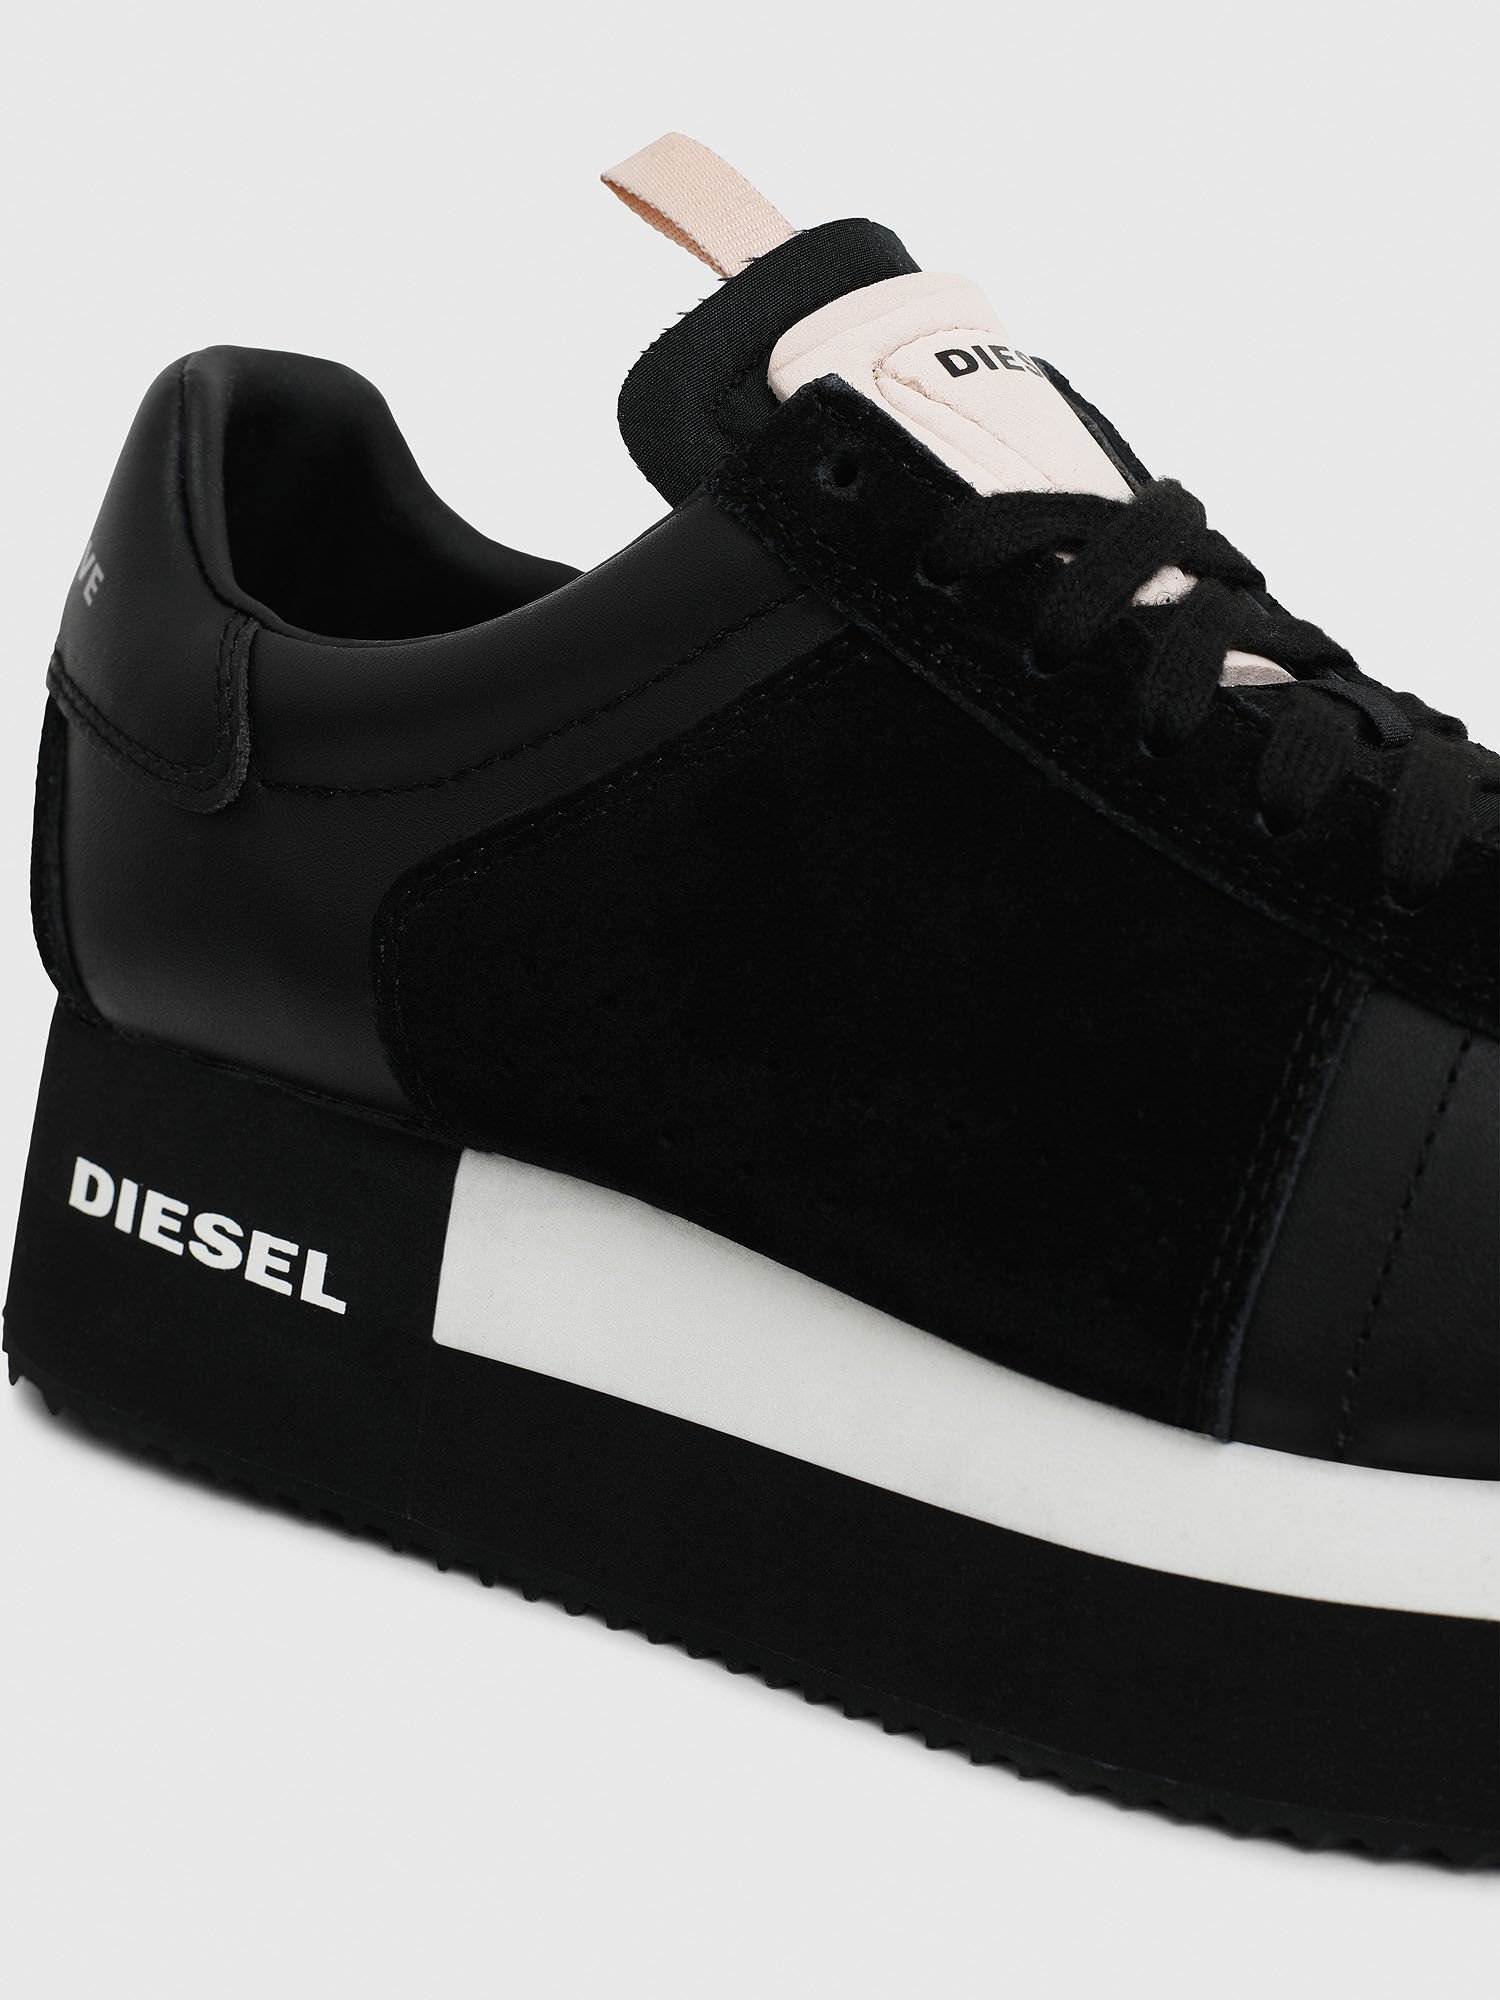 diesel sneakers south africa